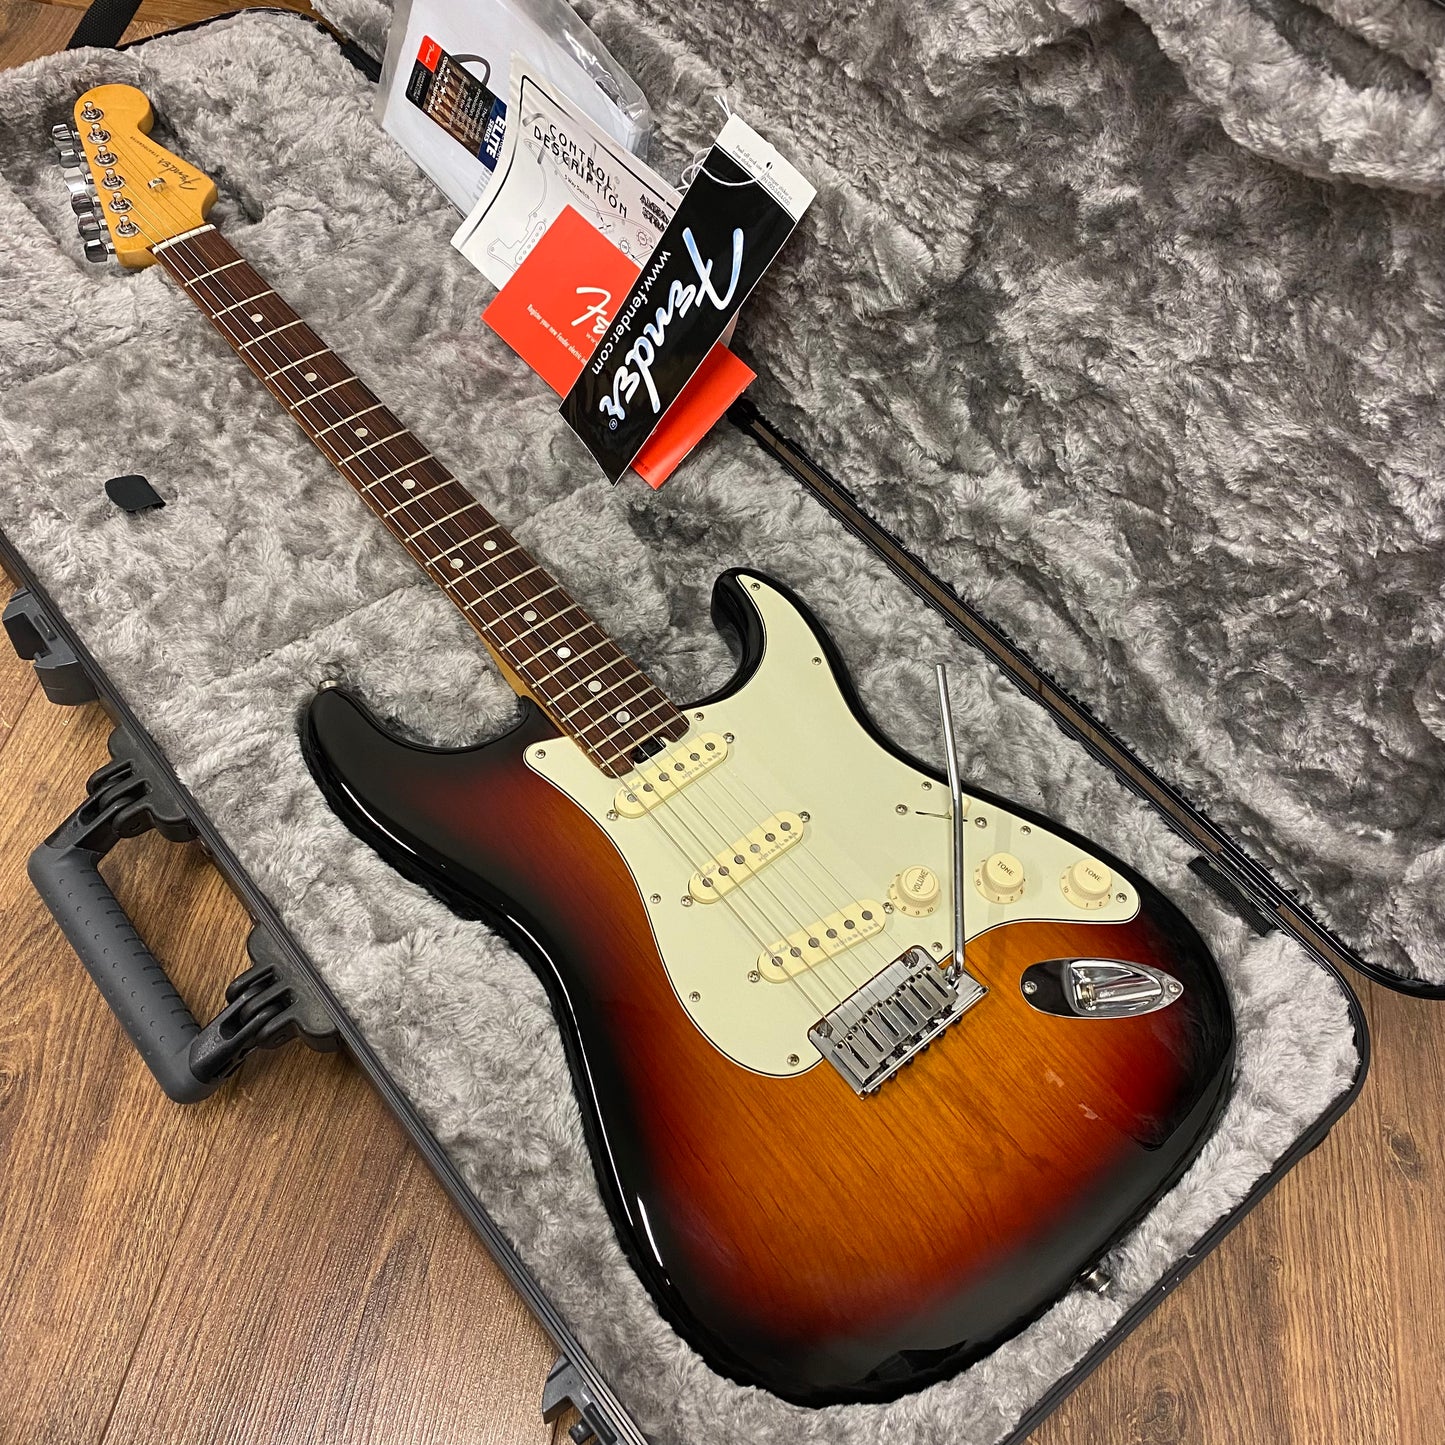 Pre-Owned Fender American Elite Stratocaster - 3-Tone Sunburst - 2016